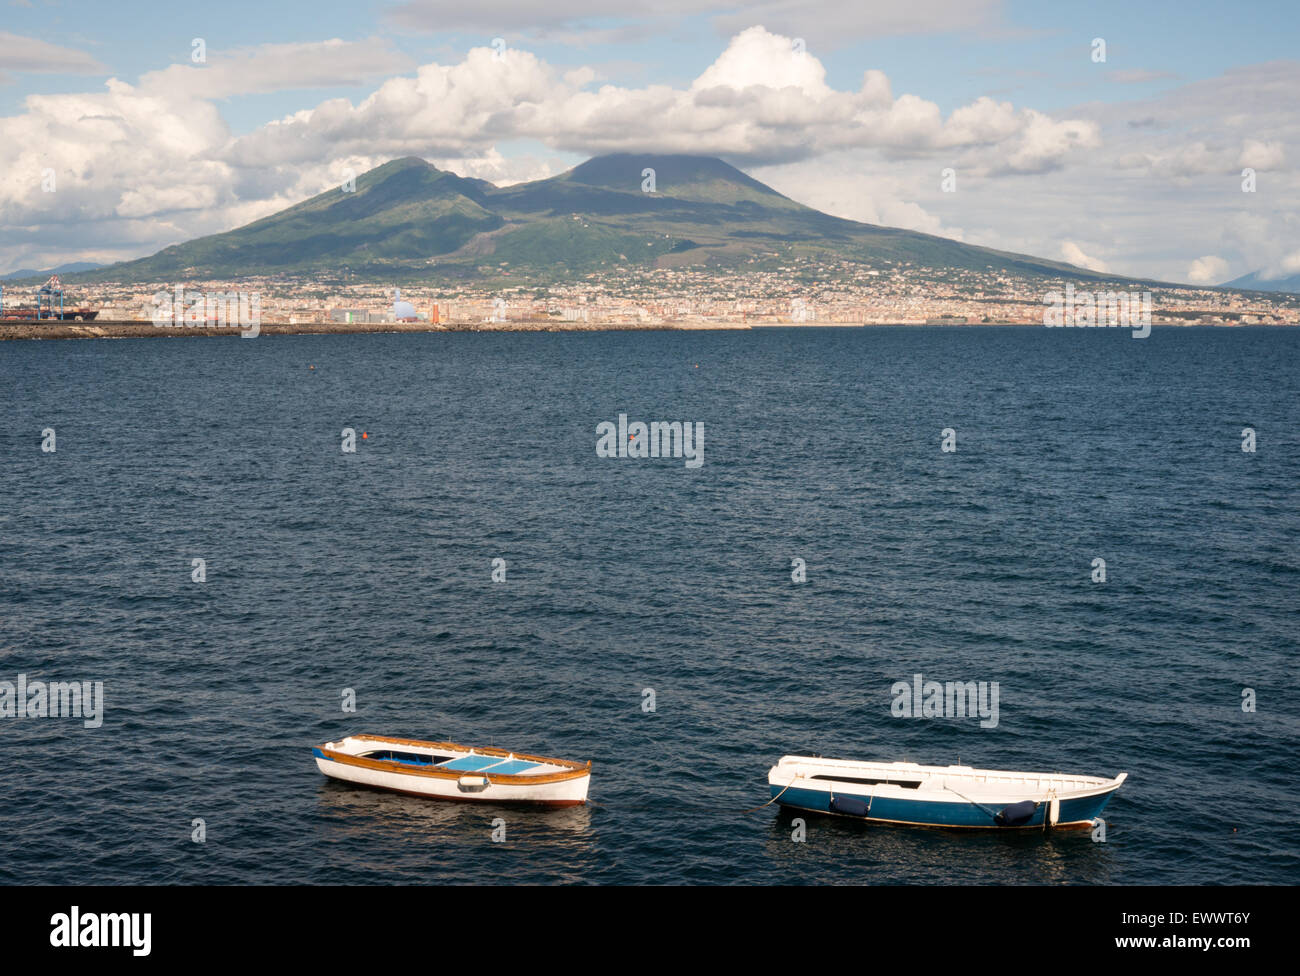 Blick auf den Vesuv, zwei Angelboote/Fischerboote und den Golf von Neapel Mergellina Stockfoto